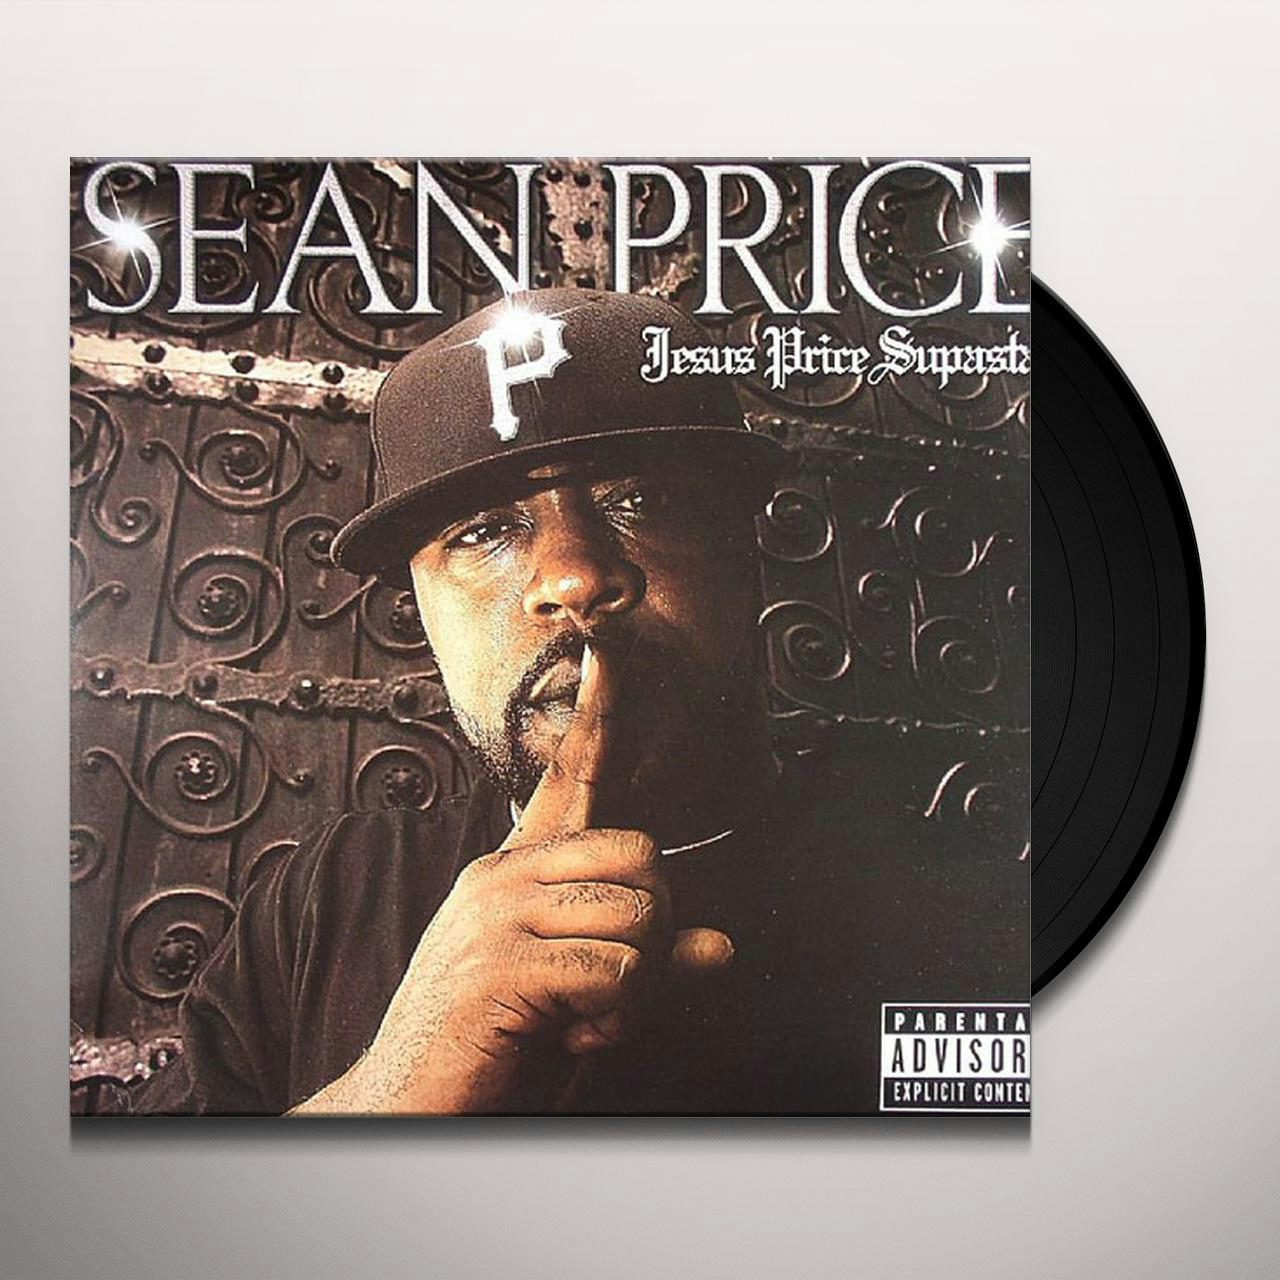 Sean Price - Imperius Rex Vinyl Record